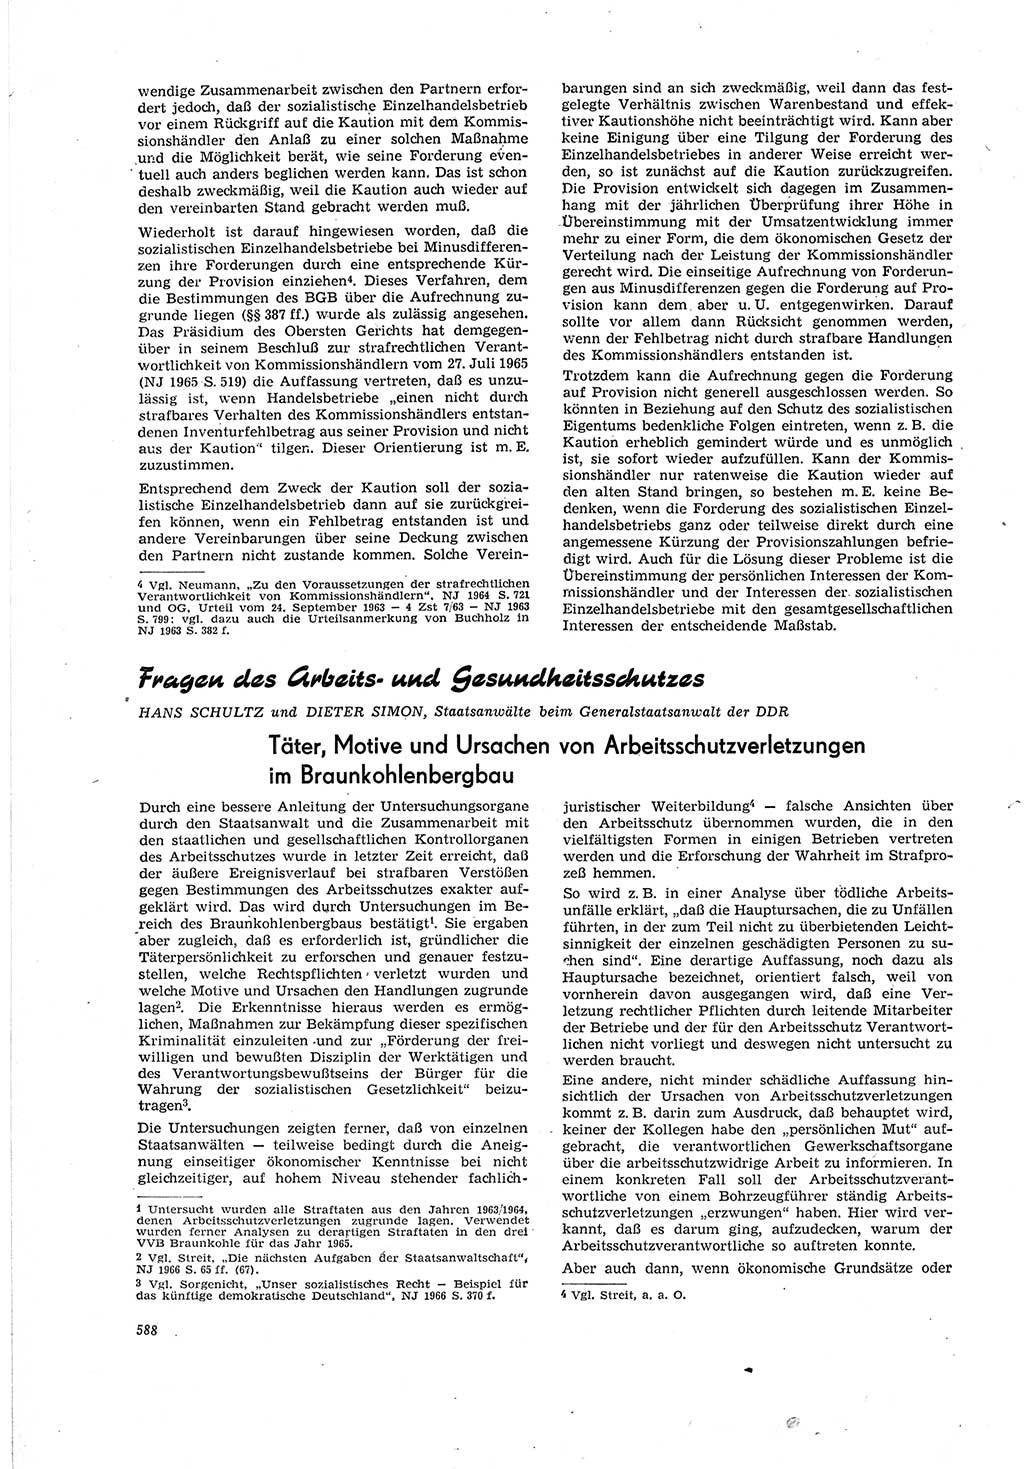 Neue Justiz (NJ), Zeitschrift für Recht und Rechtswissenschaft [Deutsche Demokratische Republik (DDR)], 20. Jahrgang 1966, Seite 588 (NJ DDR 1966, S. 588)